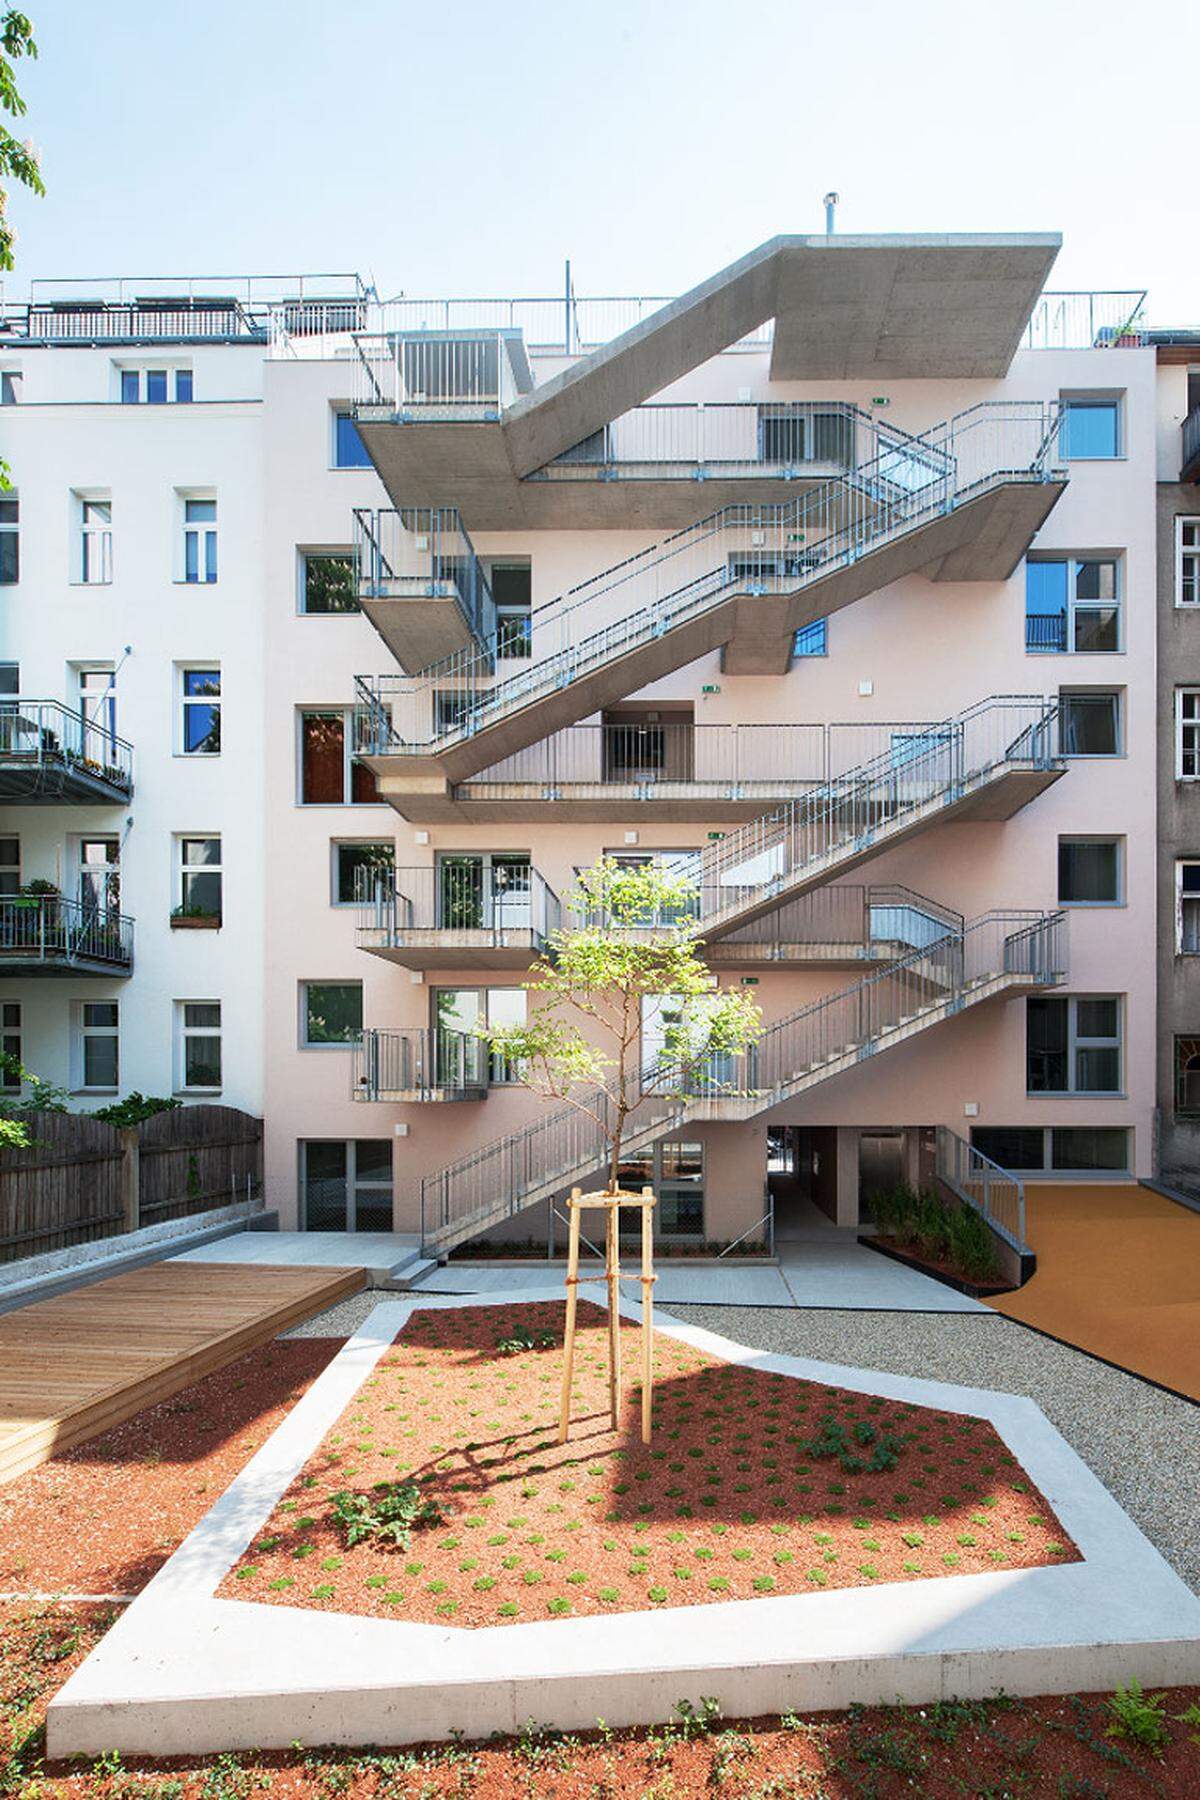 In der Kategorie Mehrfamilienhäuser wurde unter anderem das Projekt "Wohnhaus Beckmann" in Wien ausgezeichnet. Für die Architektur zeichnet Nerma Linsberger verantwortlich.